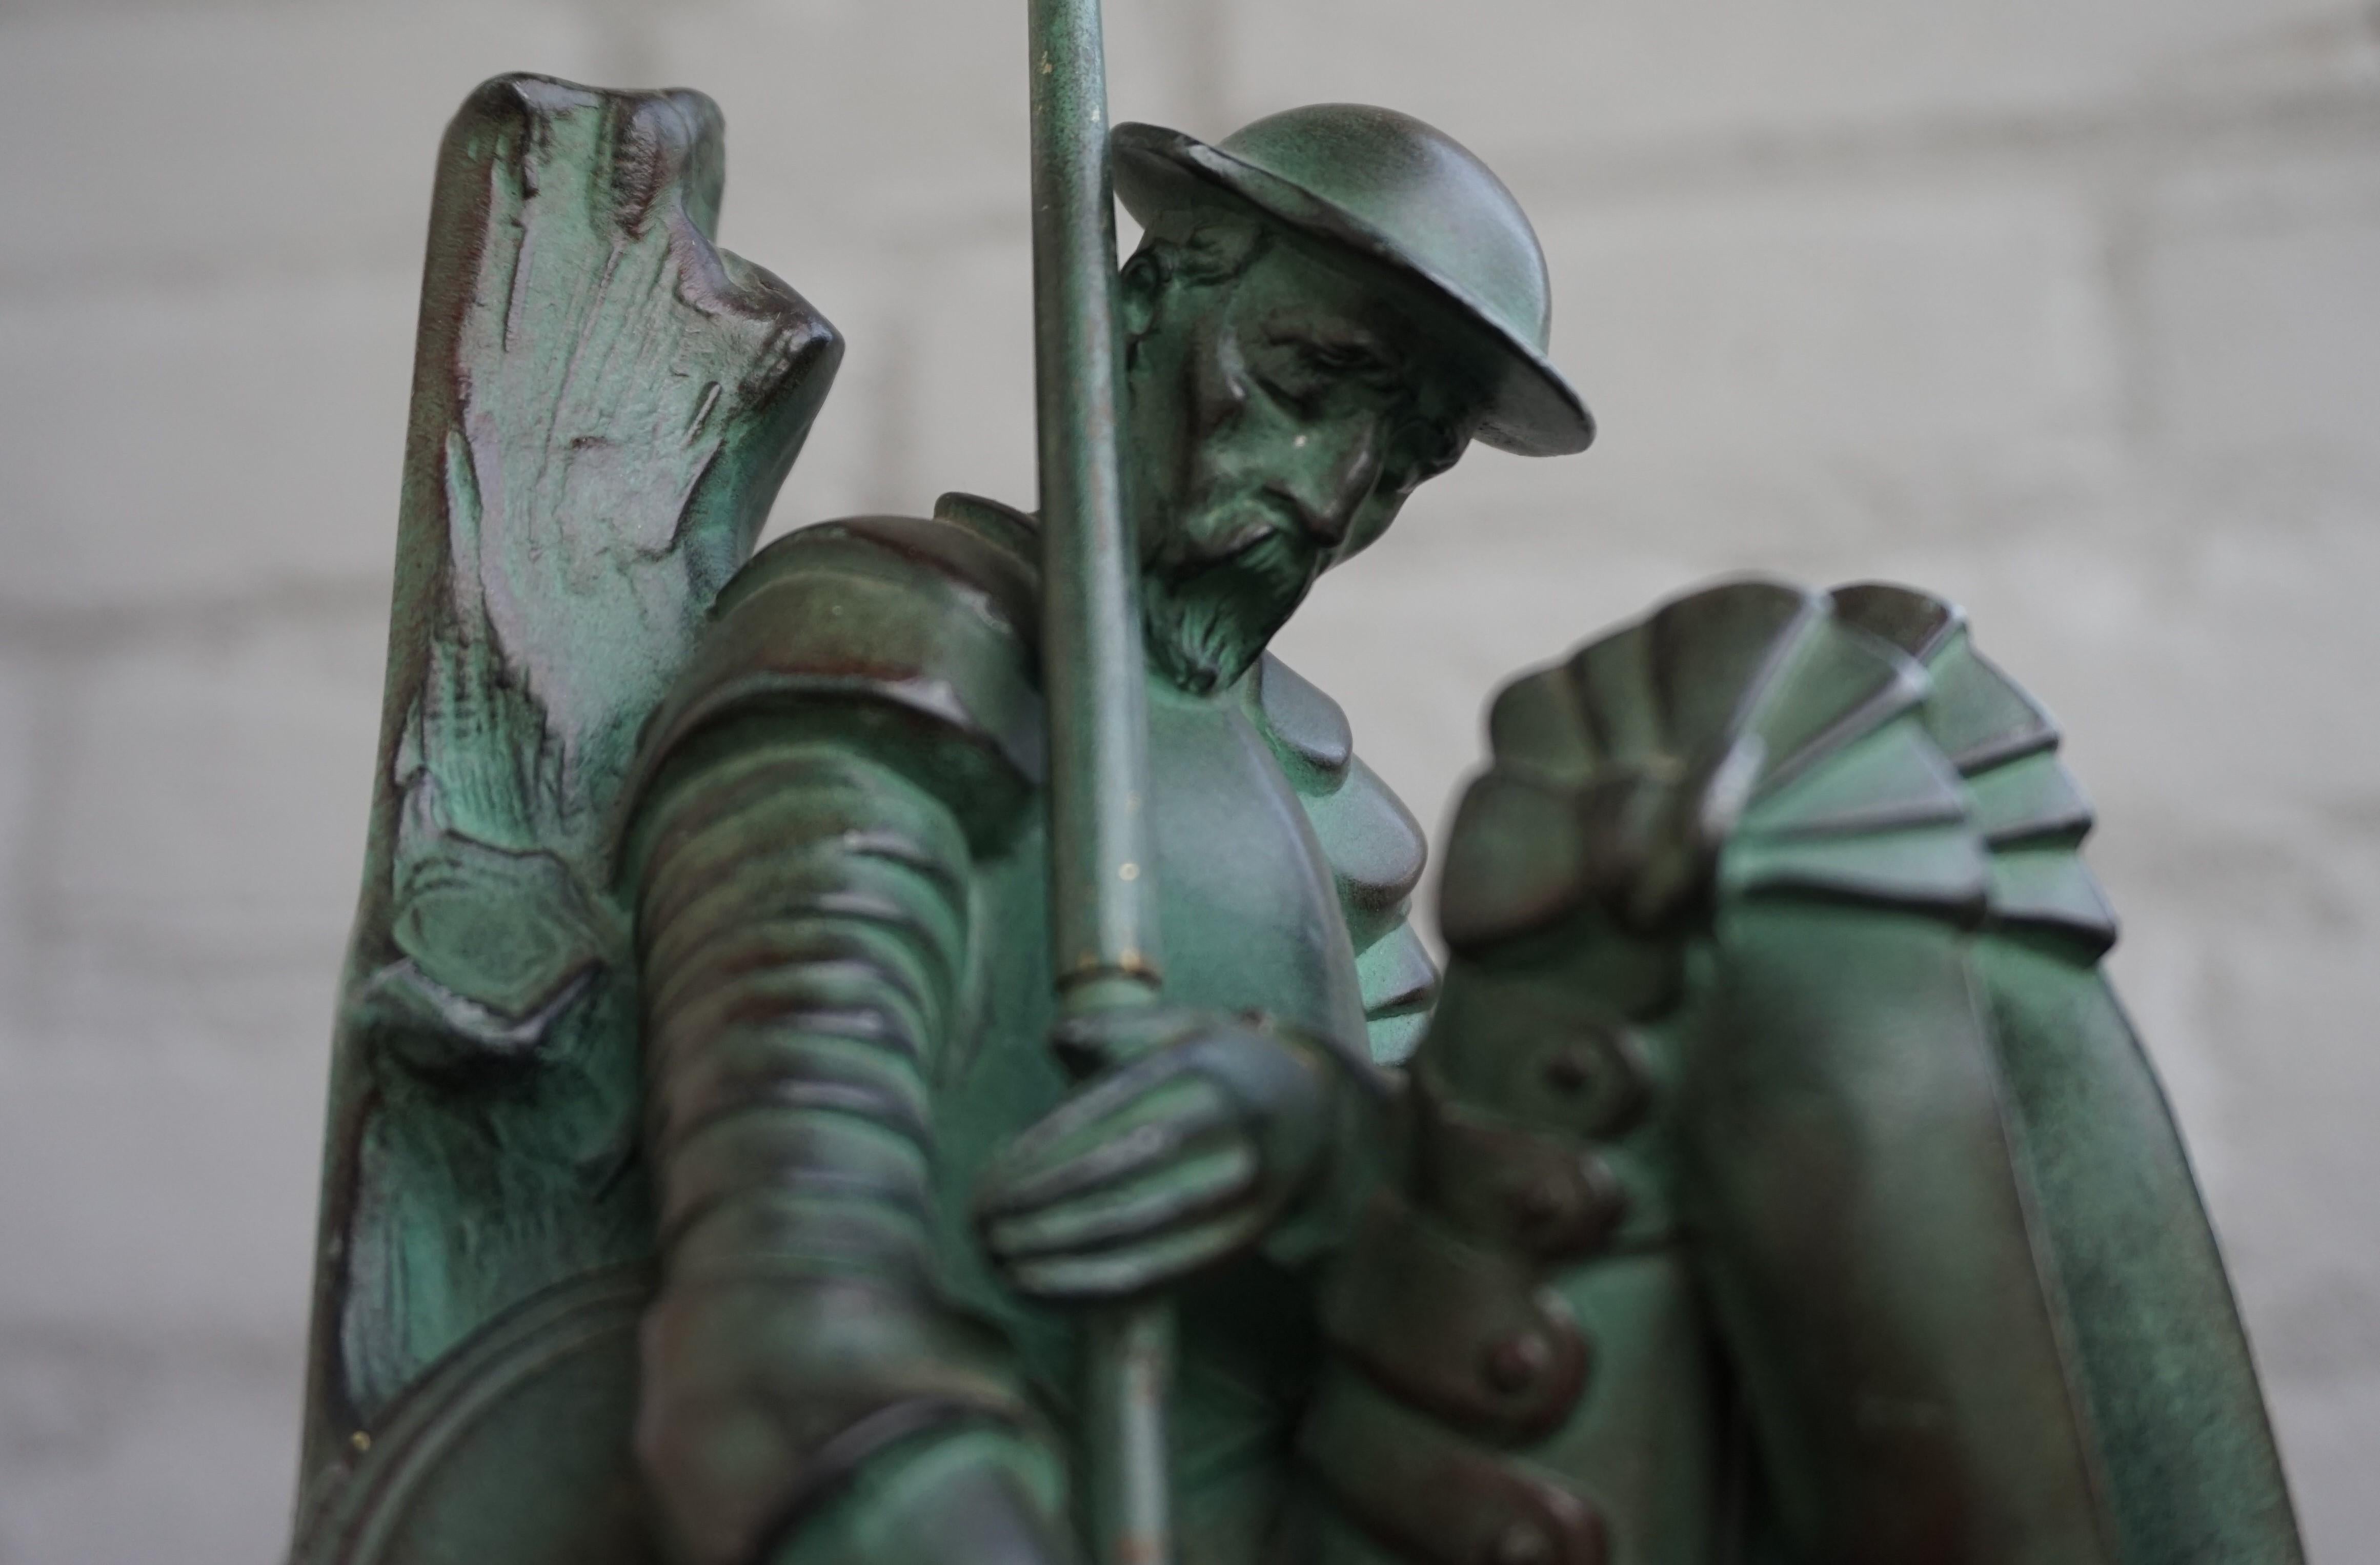 20th Century Bronze & Marble Art Deco Don Quixote & Sancho Panza Sculpture Bookends by Janle